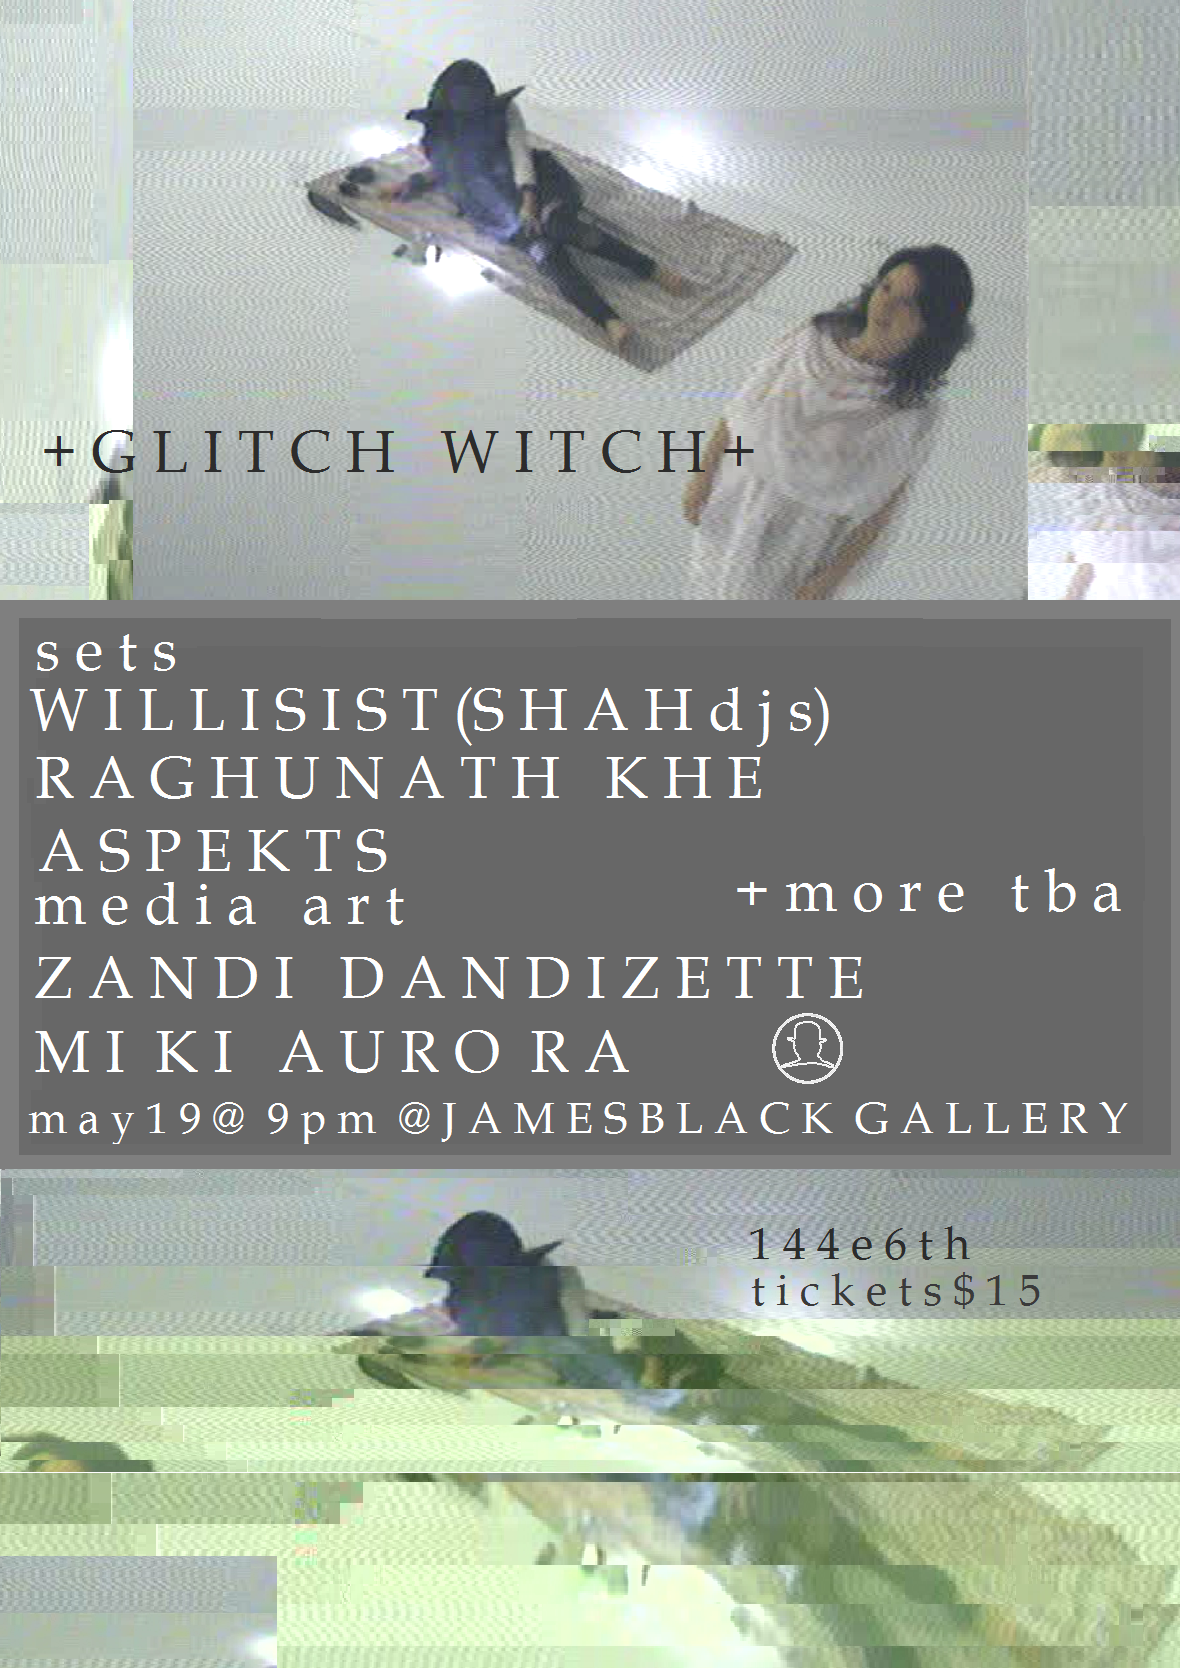 Glitch_witchflyerfinal